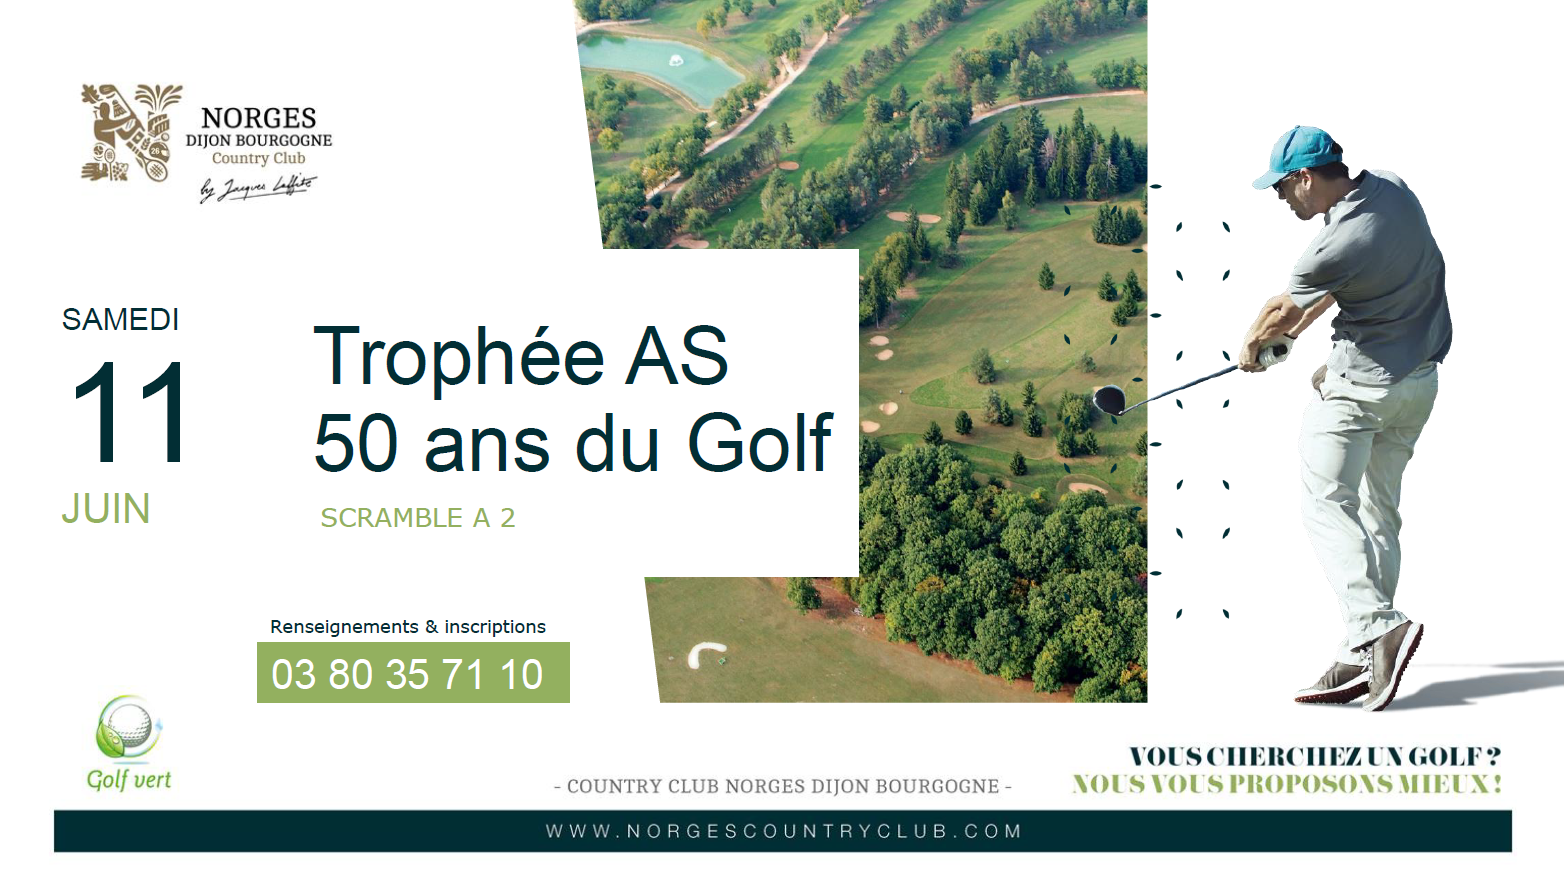 Trophée AS 50 ans du Golf